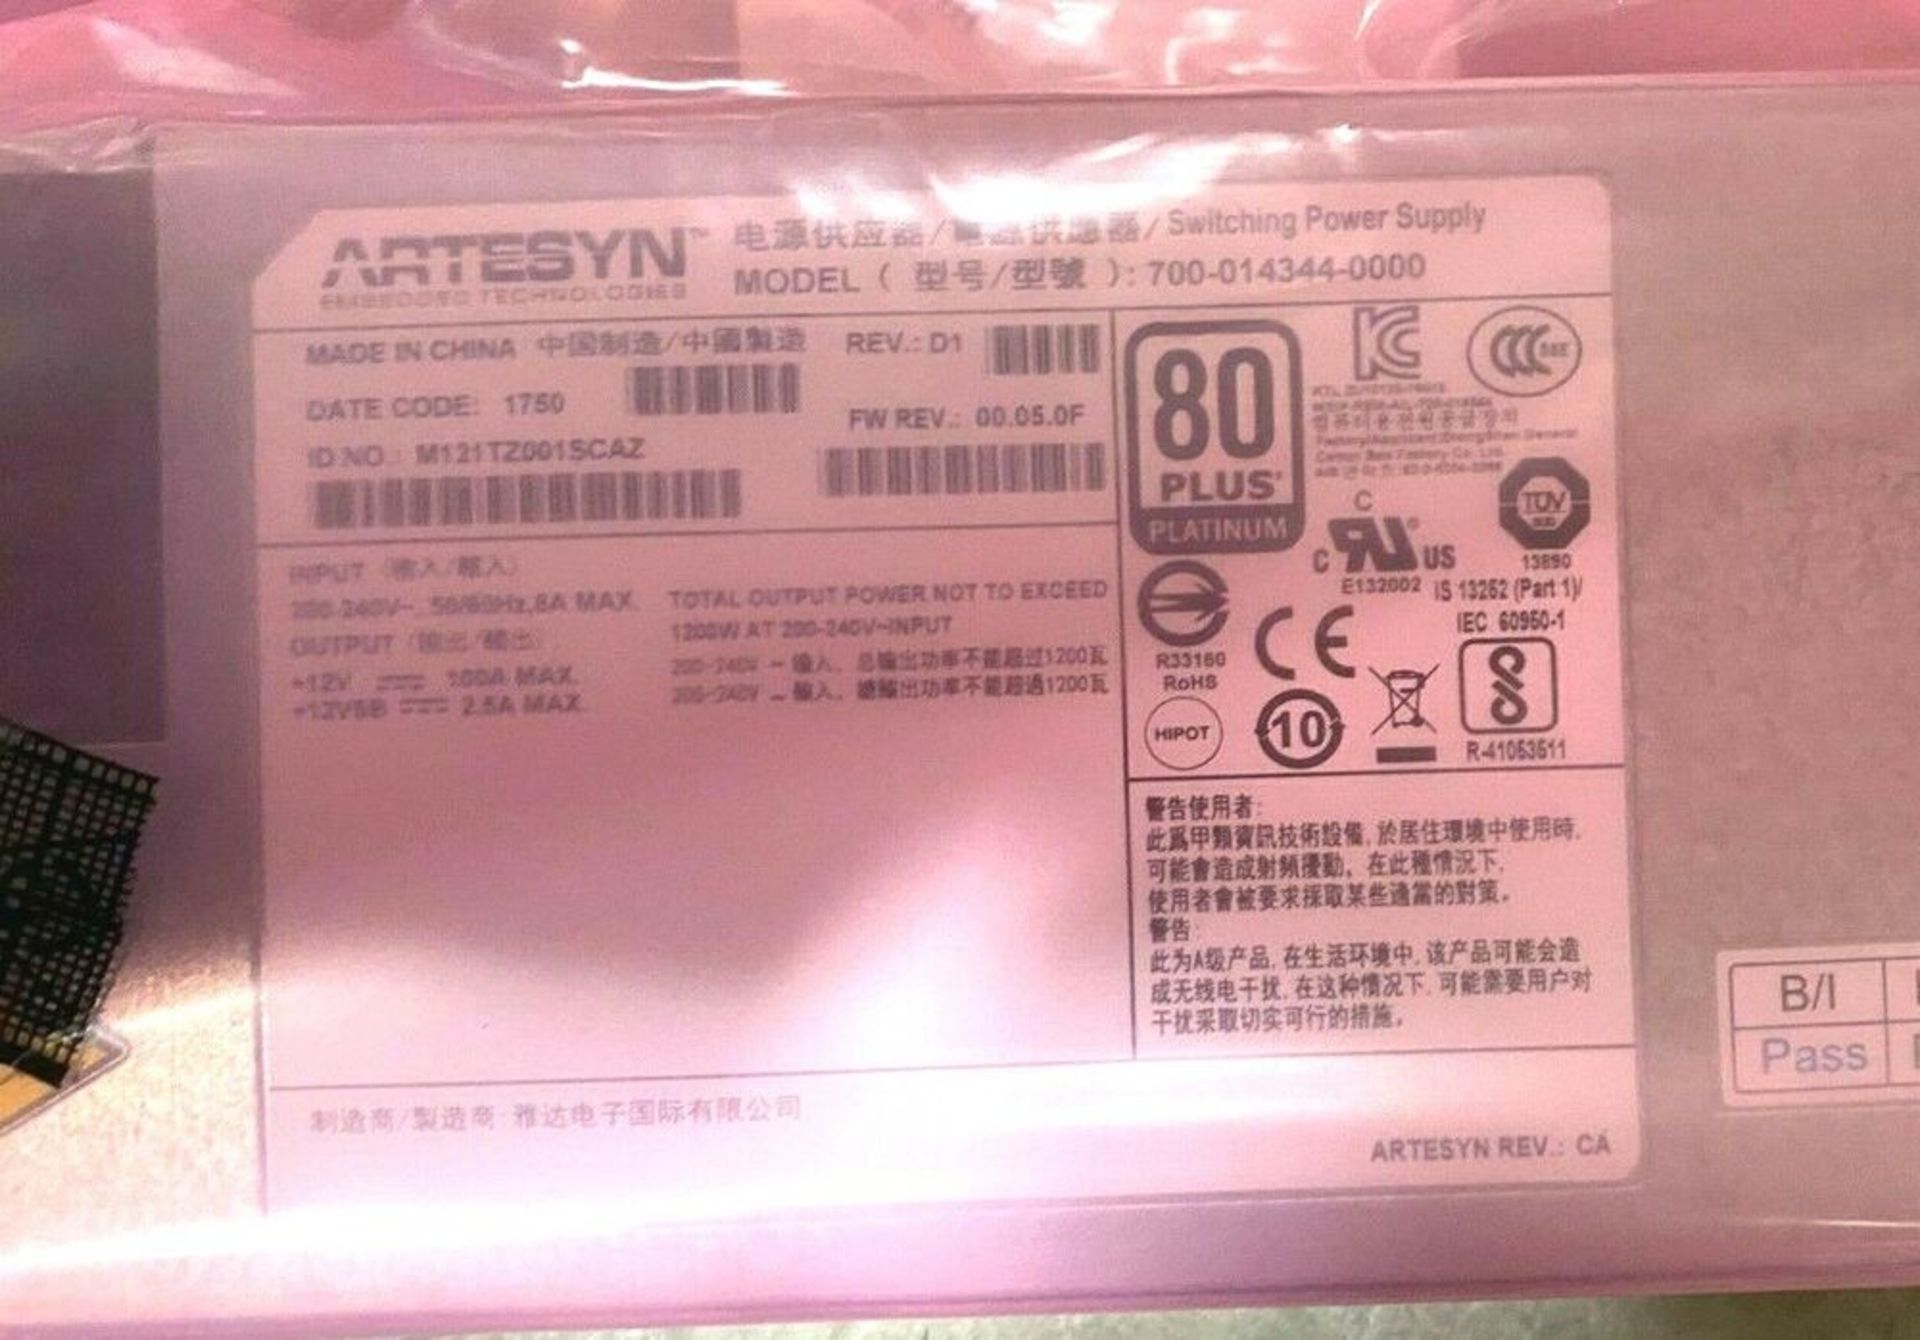 Artesyn 700-014344-0000 Power Supply - 700 Watt - Image 2 of 3